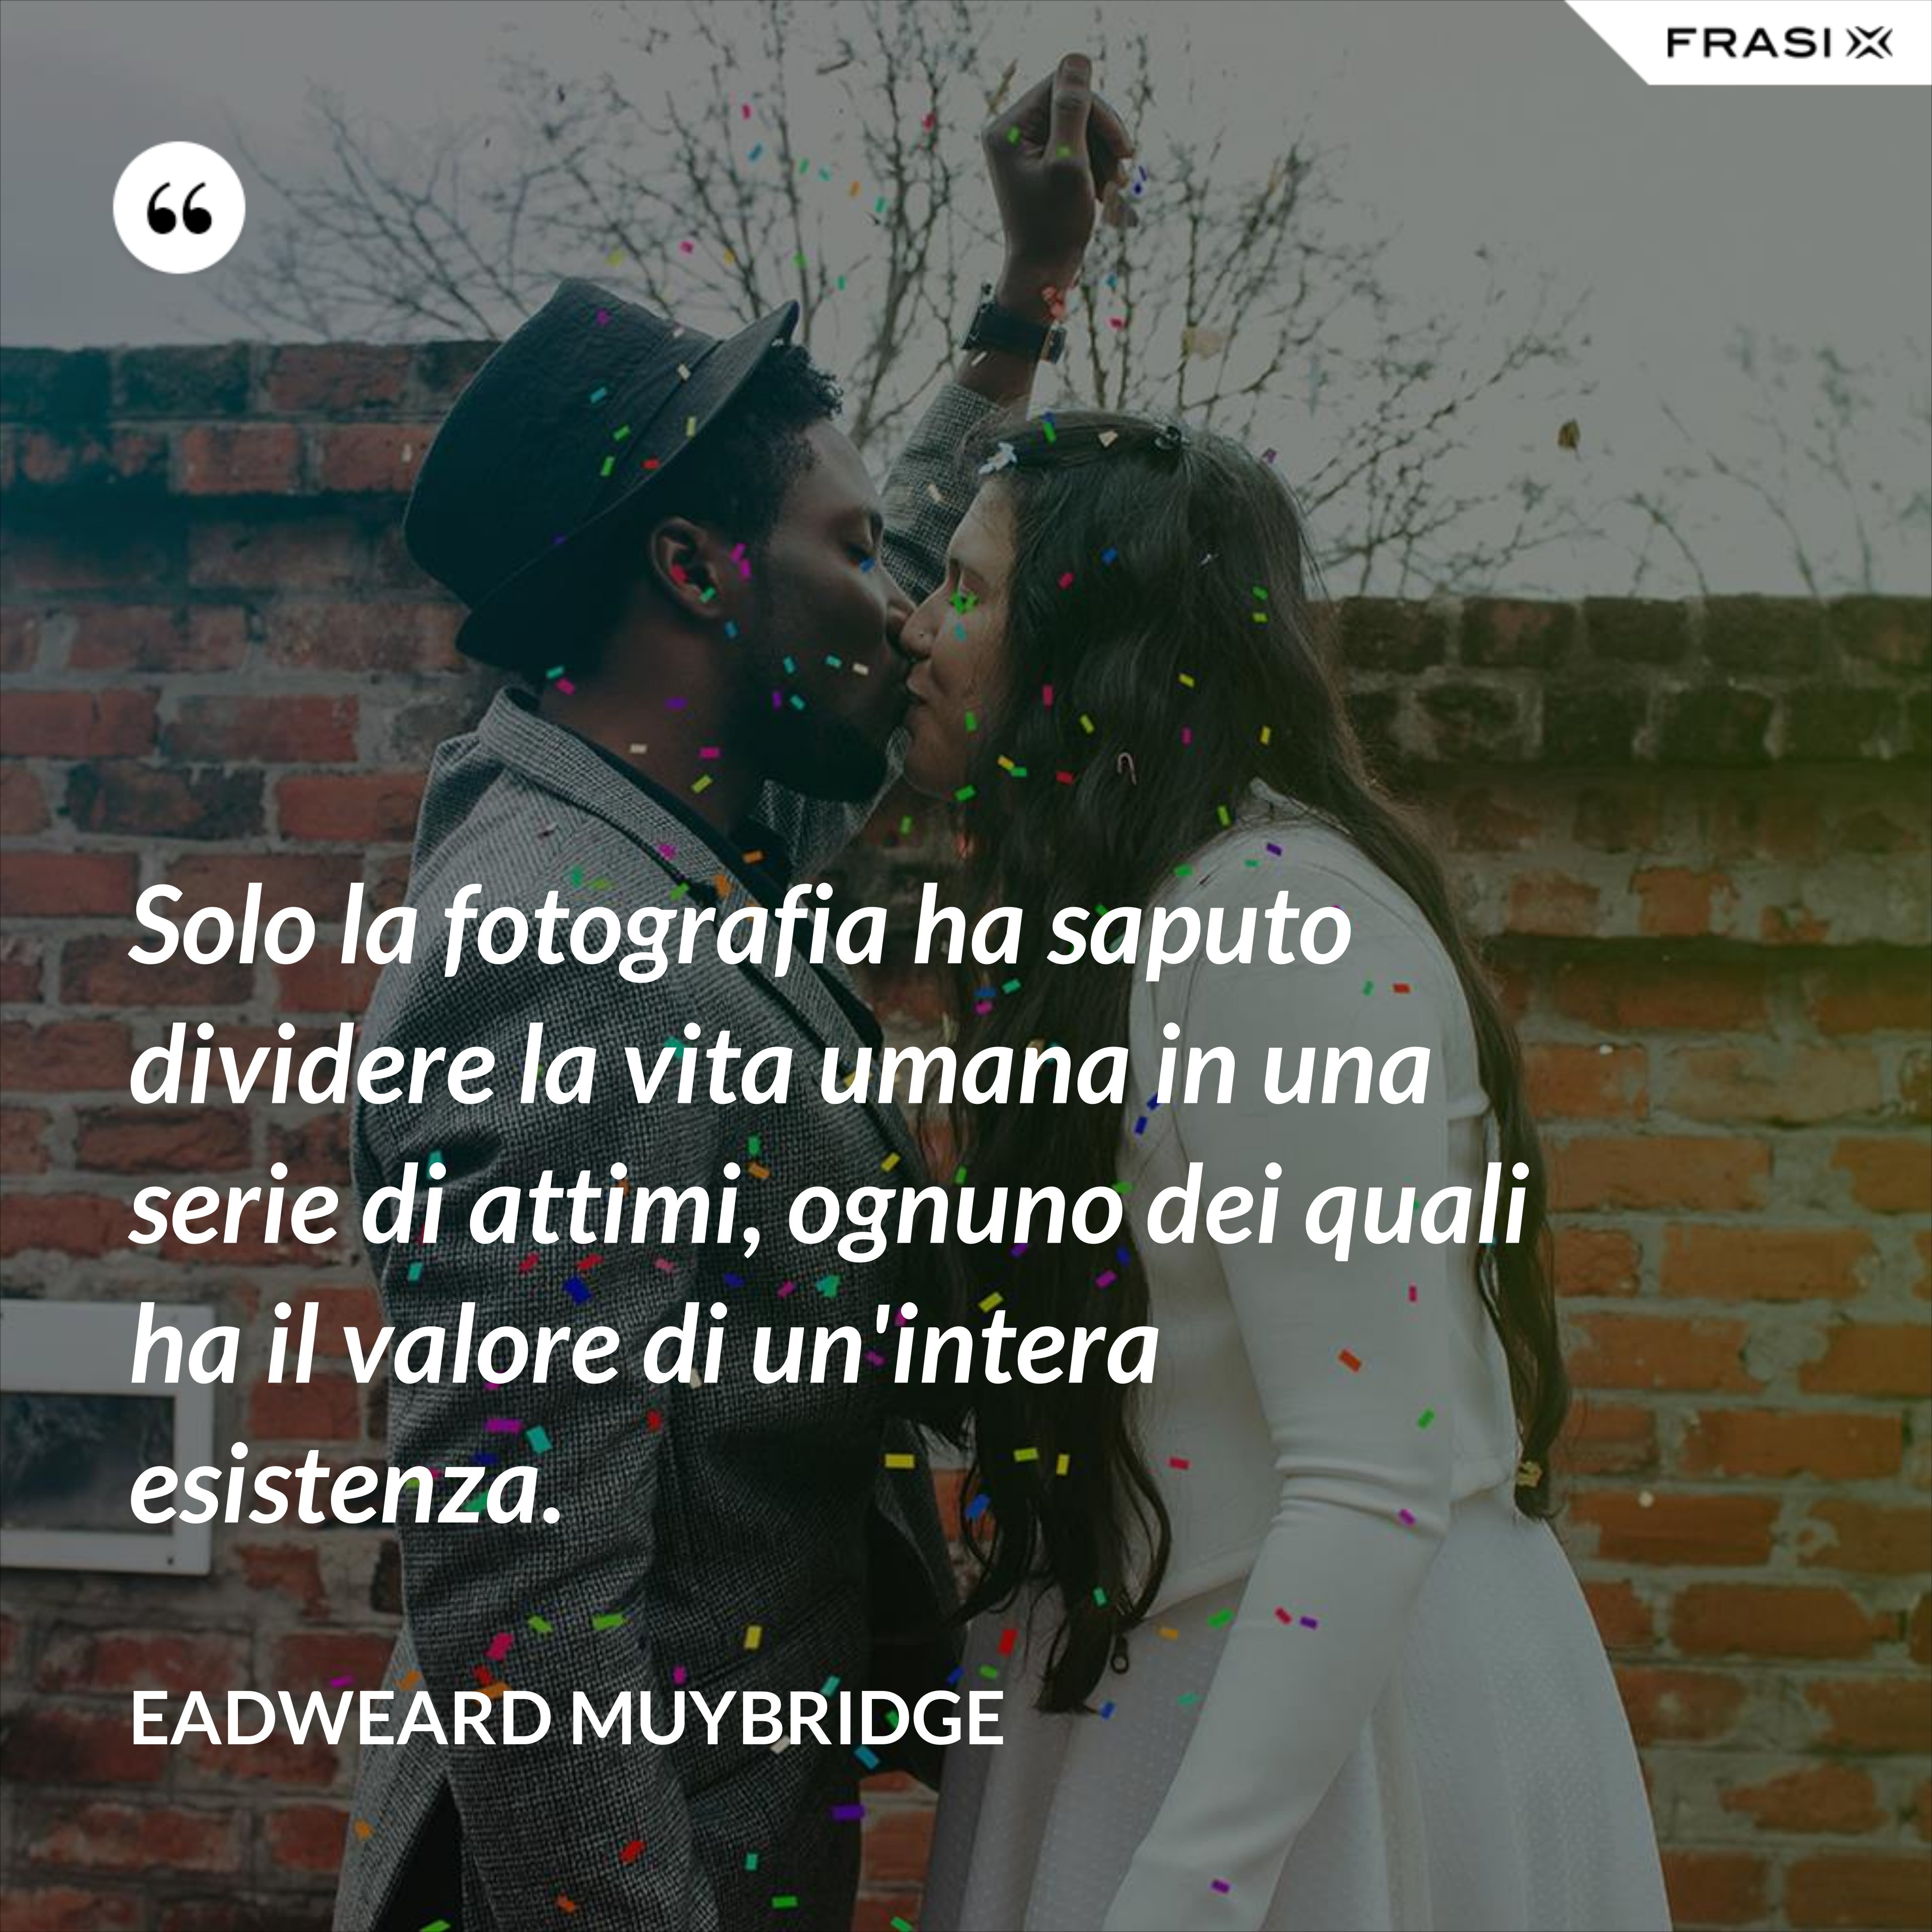 Solo la fotografia ha saputo dividere la vita umana in una serie di attimi, ognuno dei quali ha il valore di un'intera esistenza. - Eadweard Muybridge